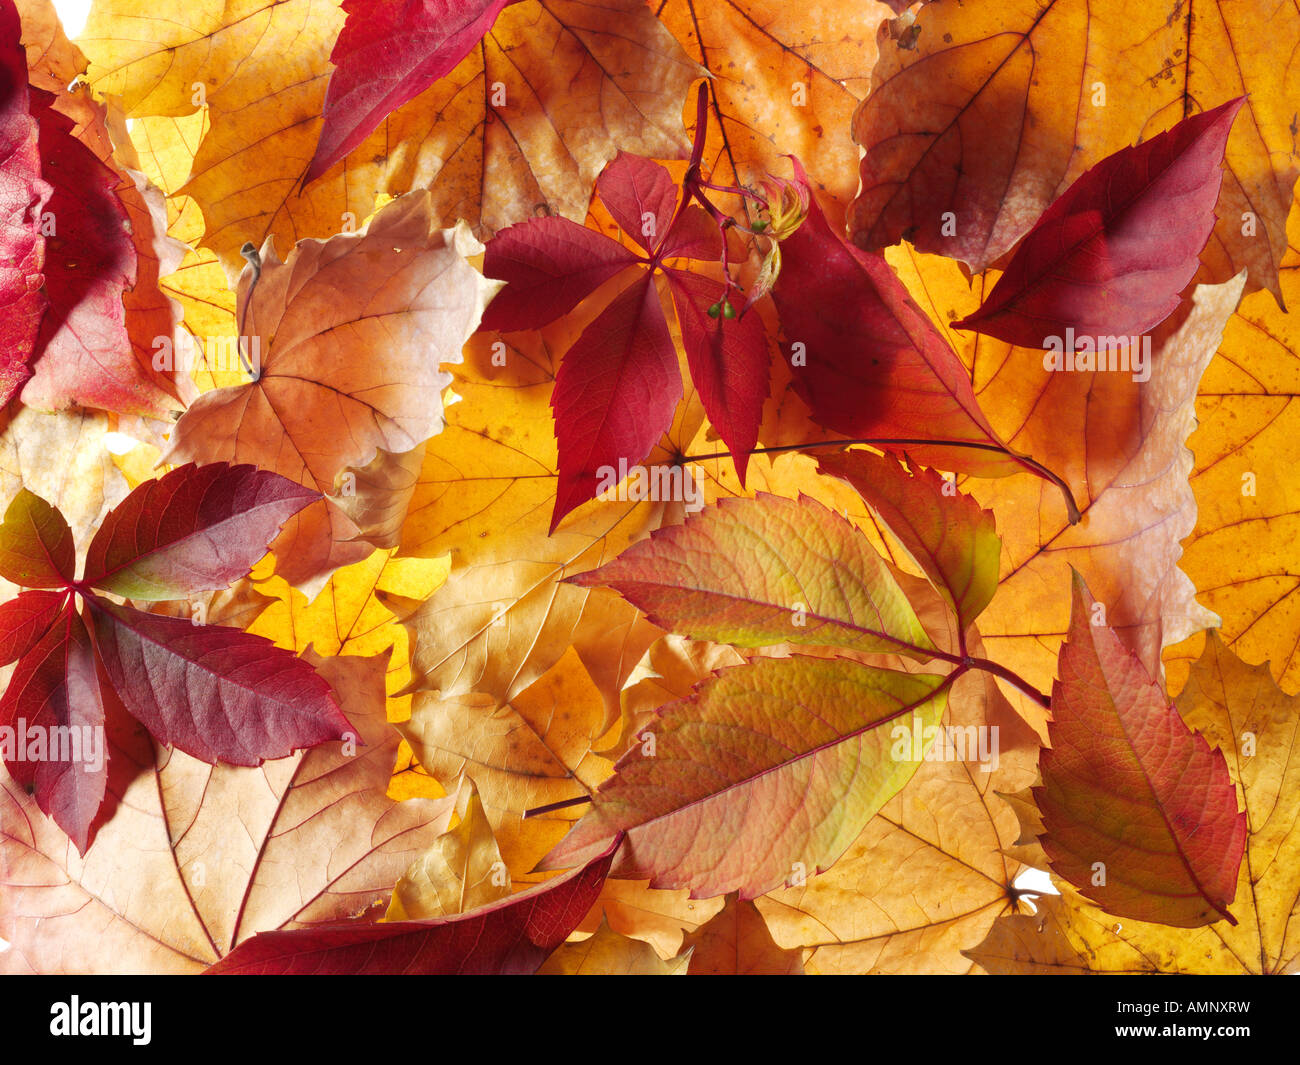 Tombée automne automne feuilles empilées les unes sur les autres. Les feuilles colorés secs avec le chaud couleurs automnales et les textures de l'automne. Banque D'Images